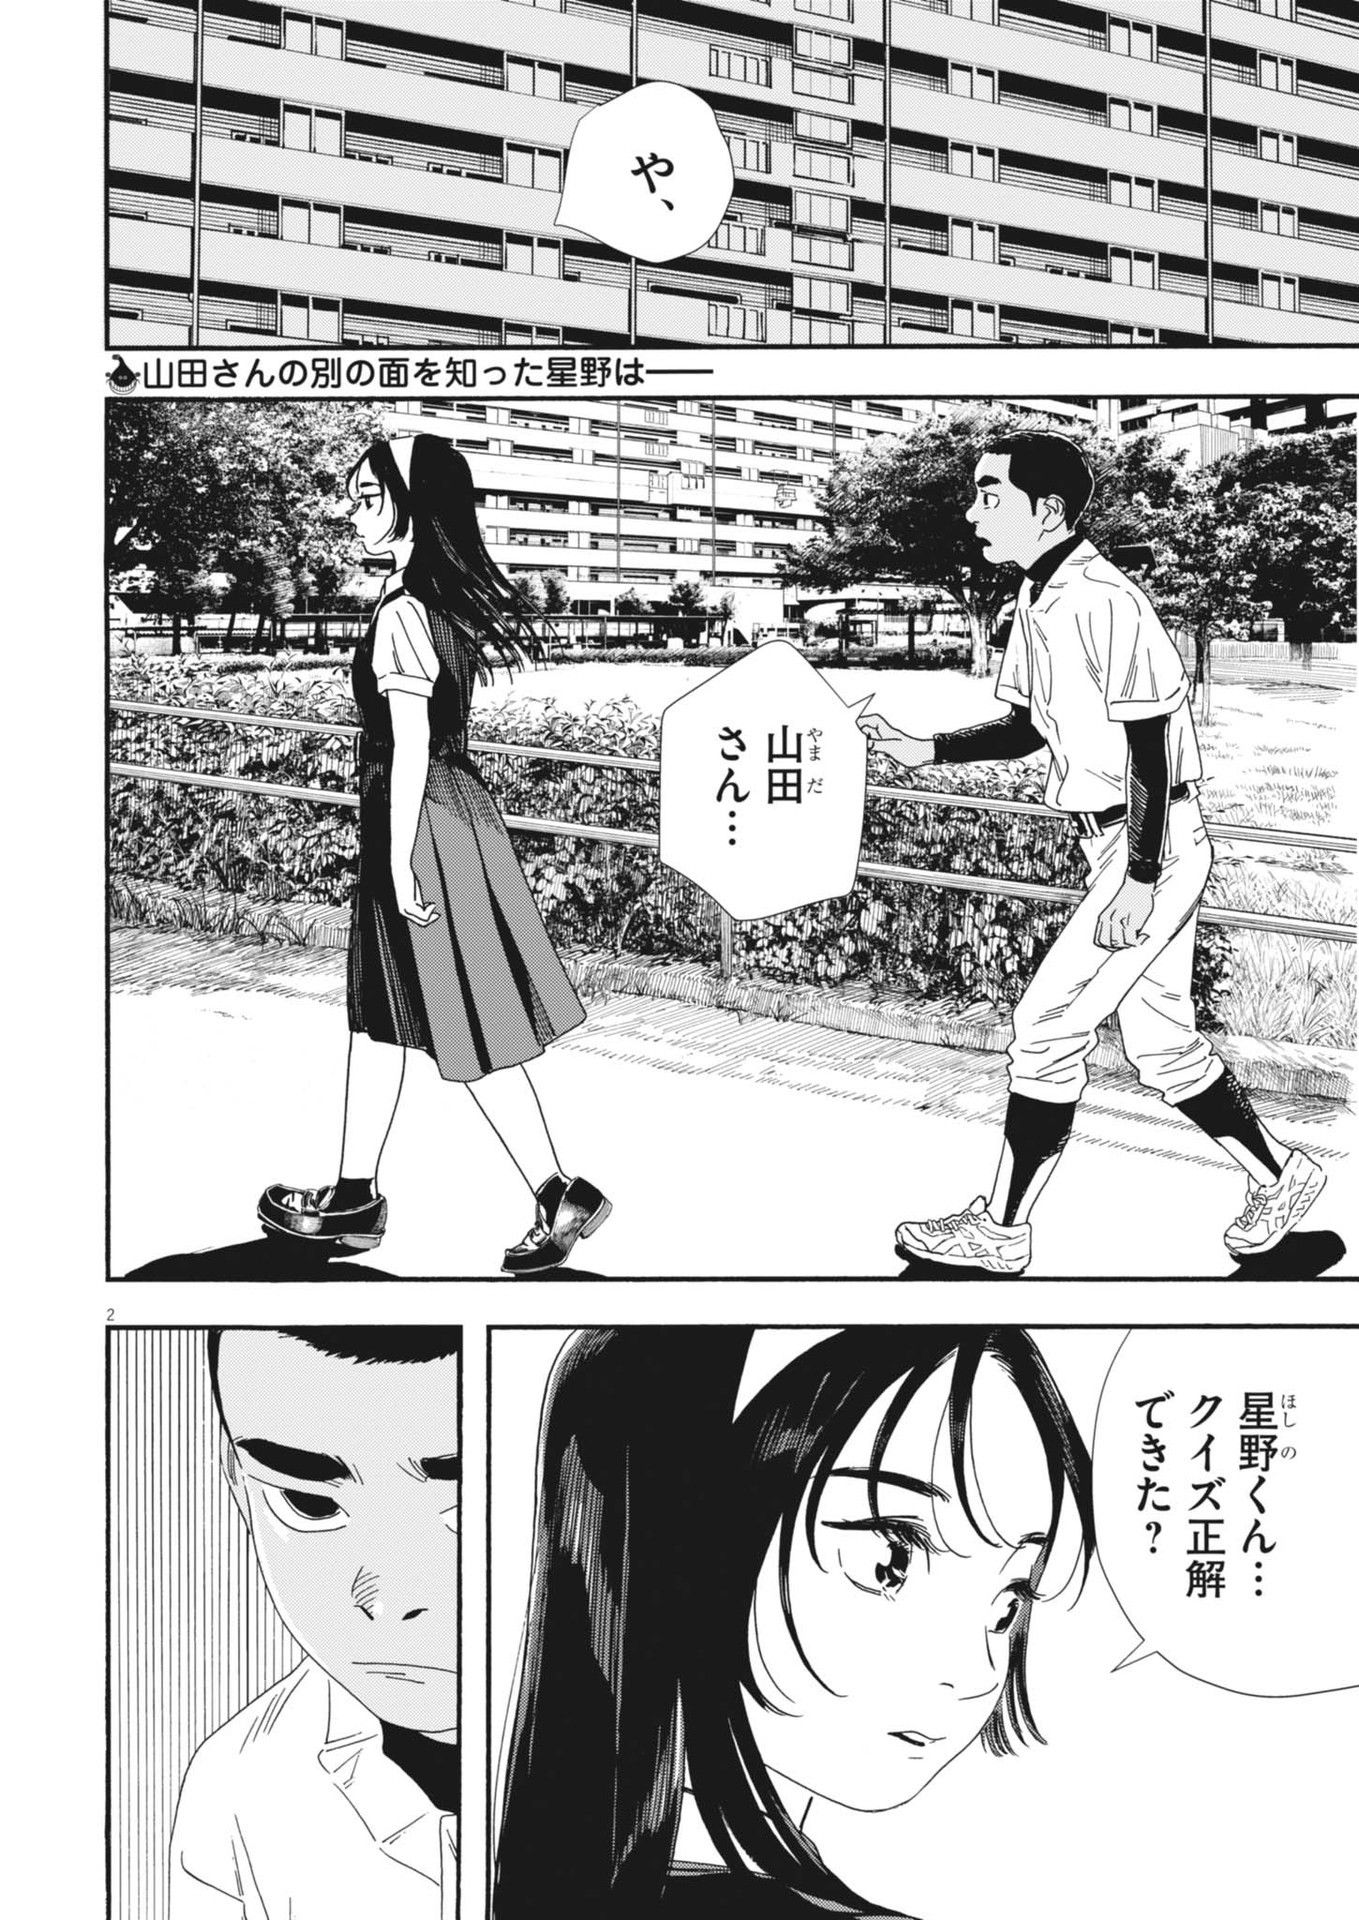 Hoshino-kun, Shitagatte! - Chapter 11 - Page 2